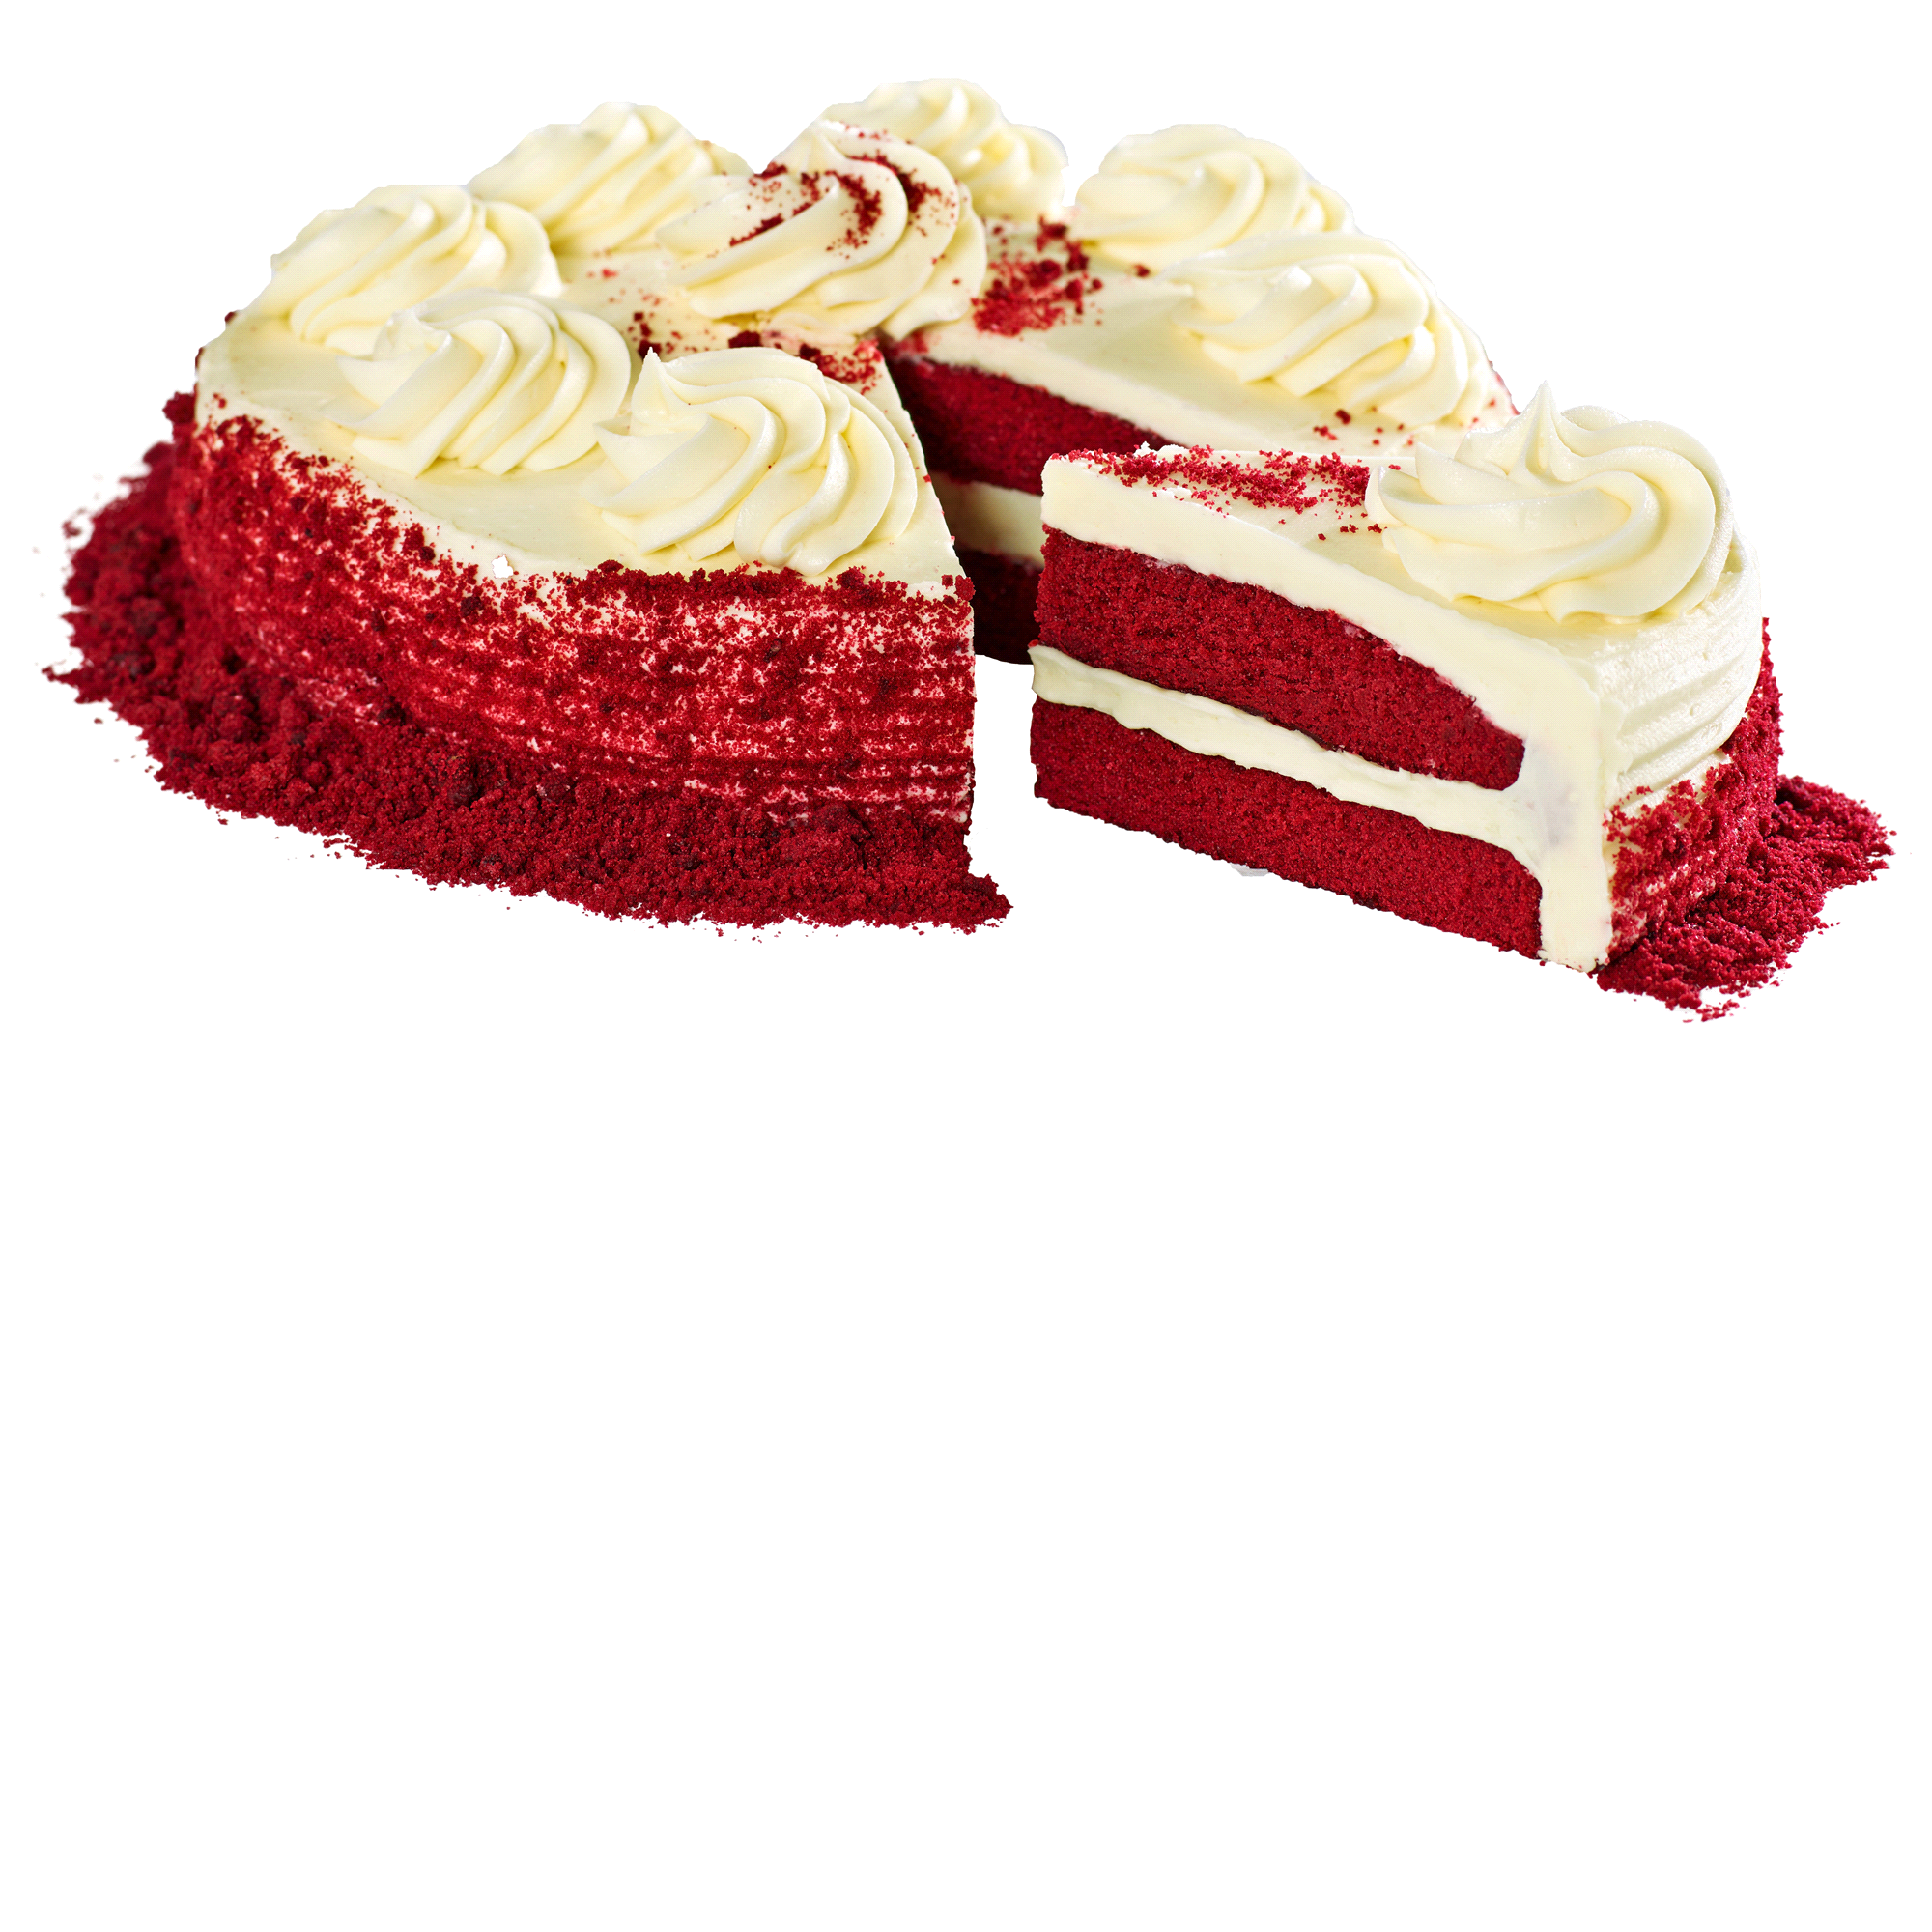 Red Velvet Cake by Eveeoni Pl